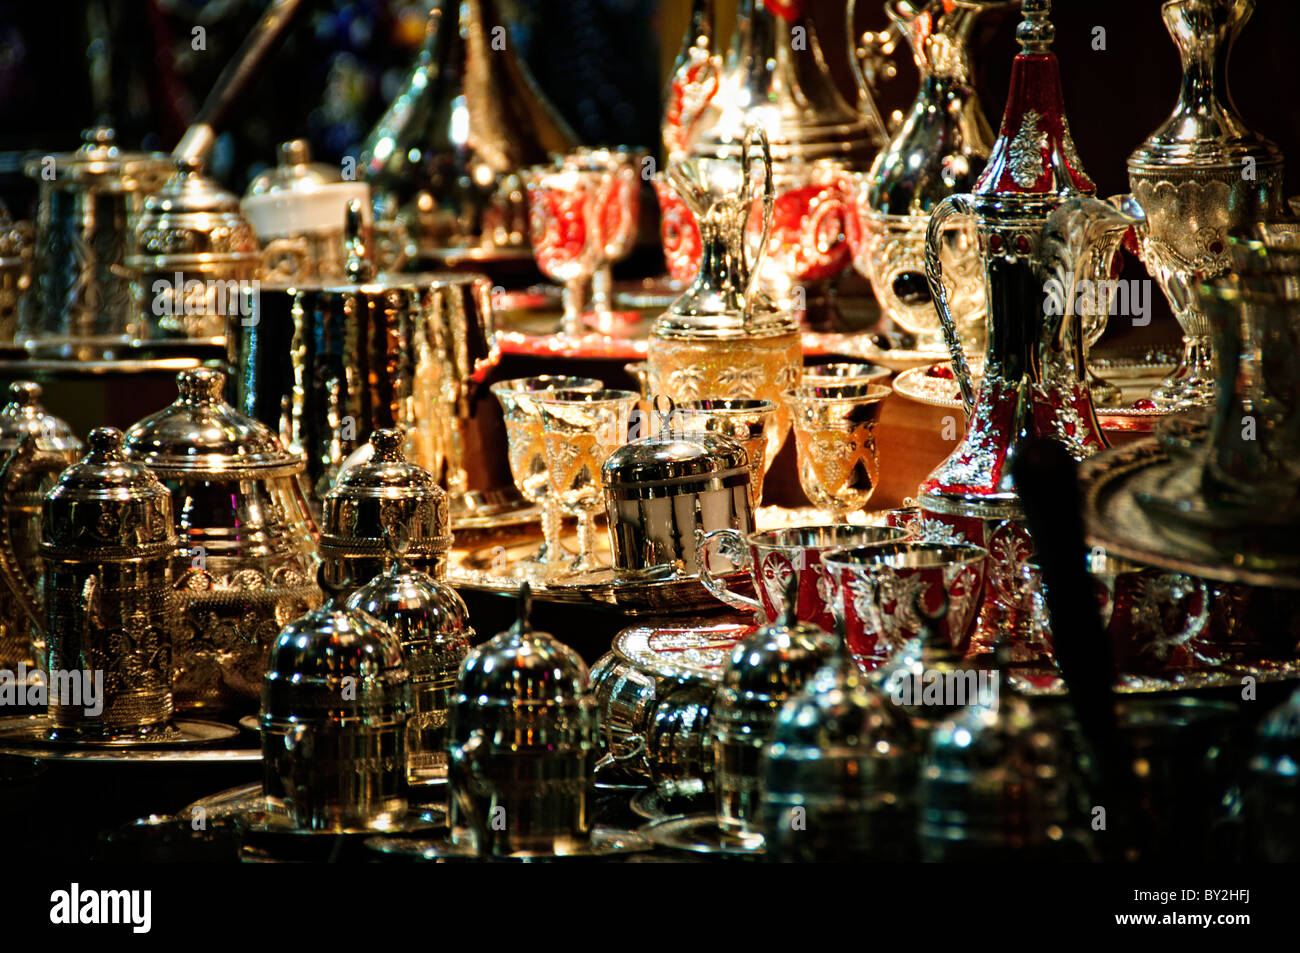 Besteck und Gläser für den Verkauf in einem Geschäft in Istanbuls historischen Grand Bazaar. Reich verzierte Tee-Sets, wie in dieser Aufnahme sind eine gemeinsame Elemente in den Basar zu finden. Stockfoto